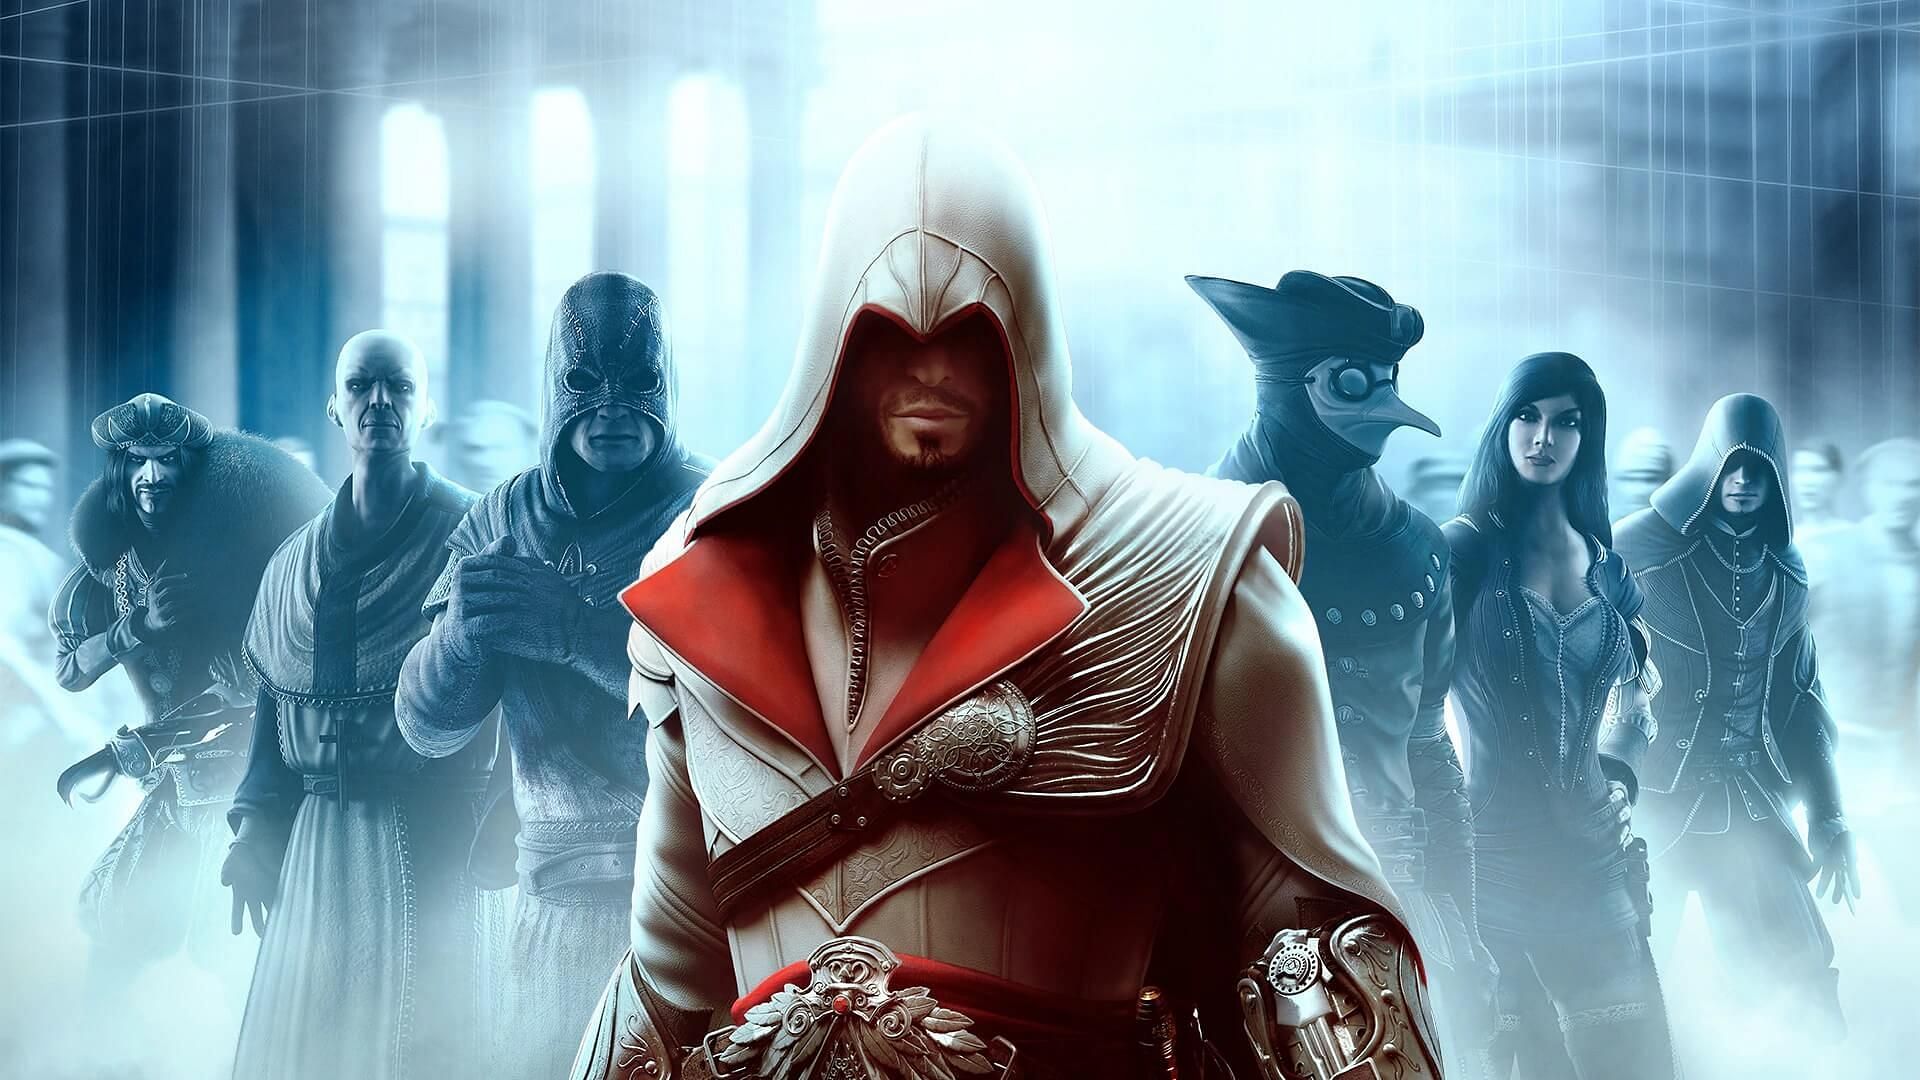 AC Brotherhood (Image via Ubisoft)